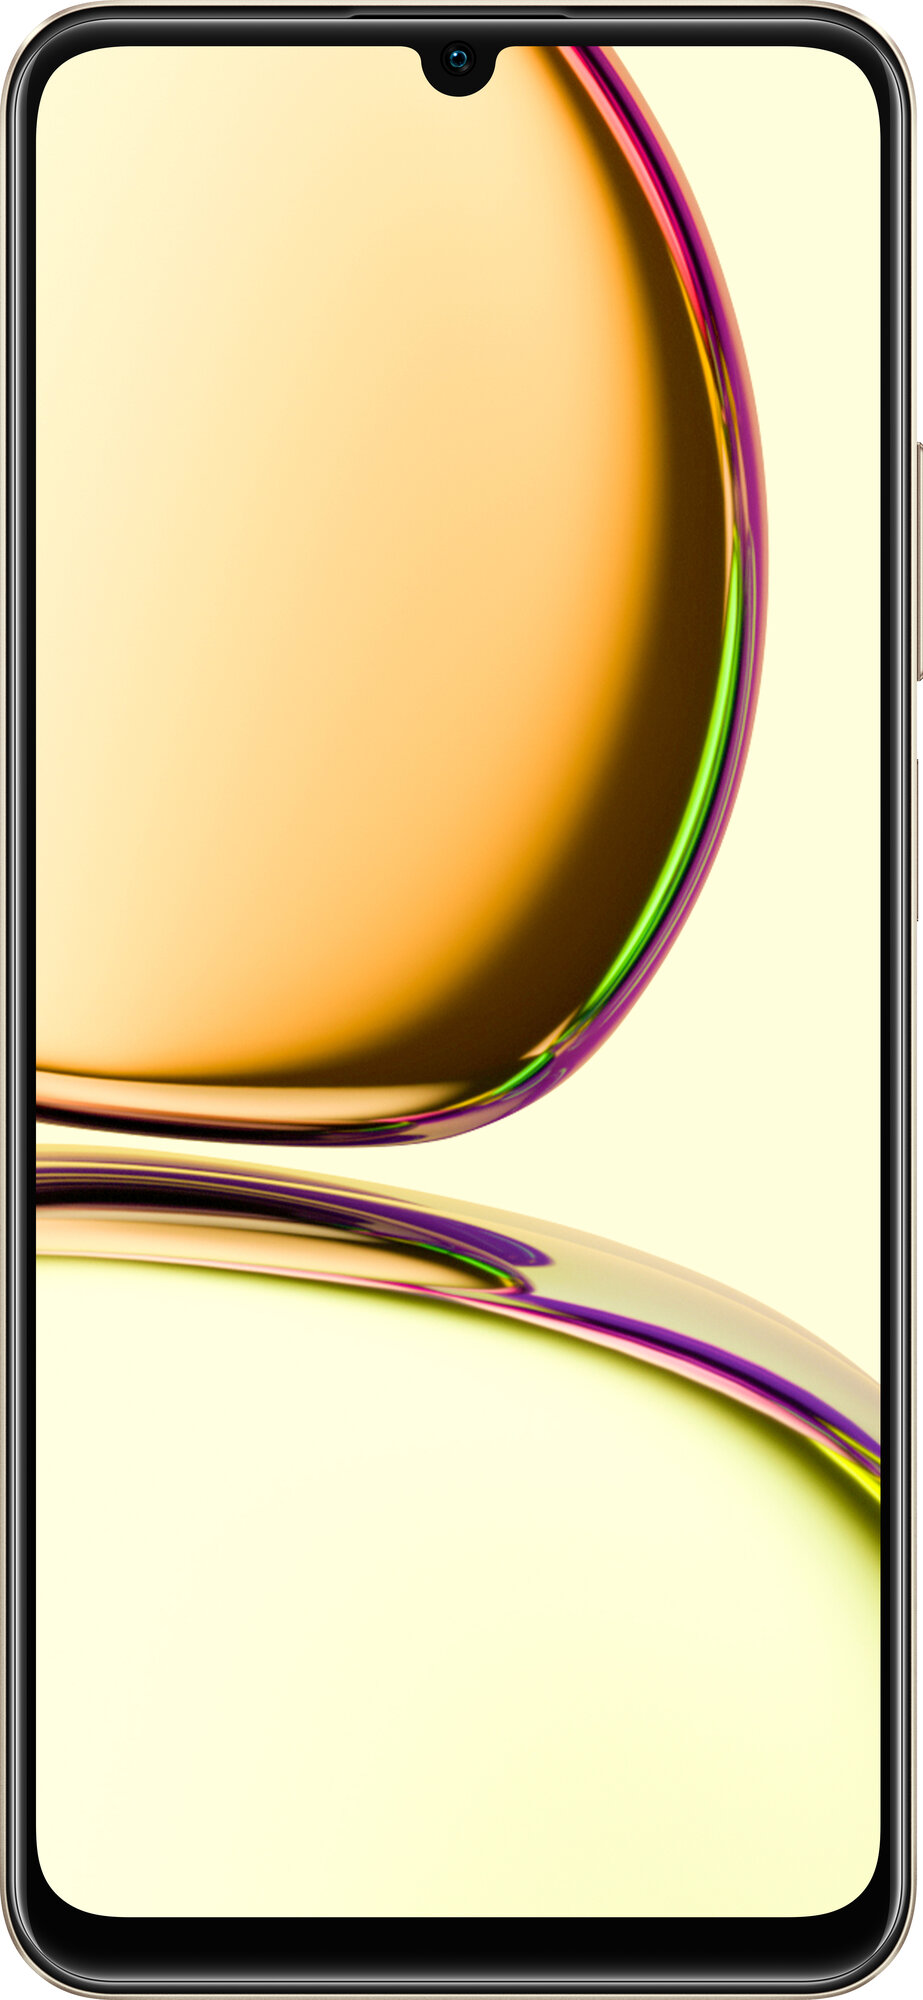 Смартфон realme C53 8/256 ГБ RU, 2 nano SIM, чемпионское золото